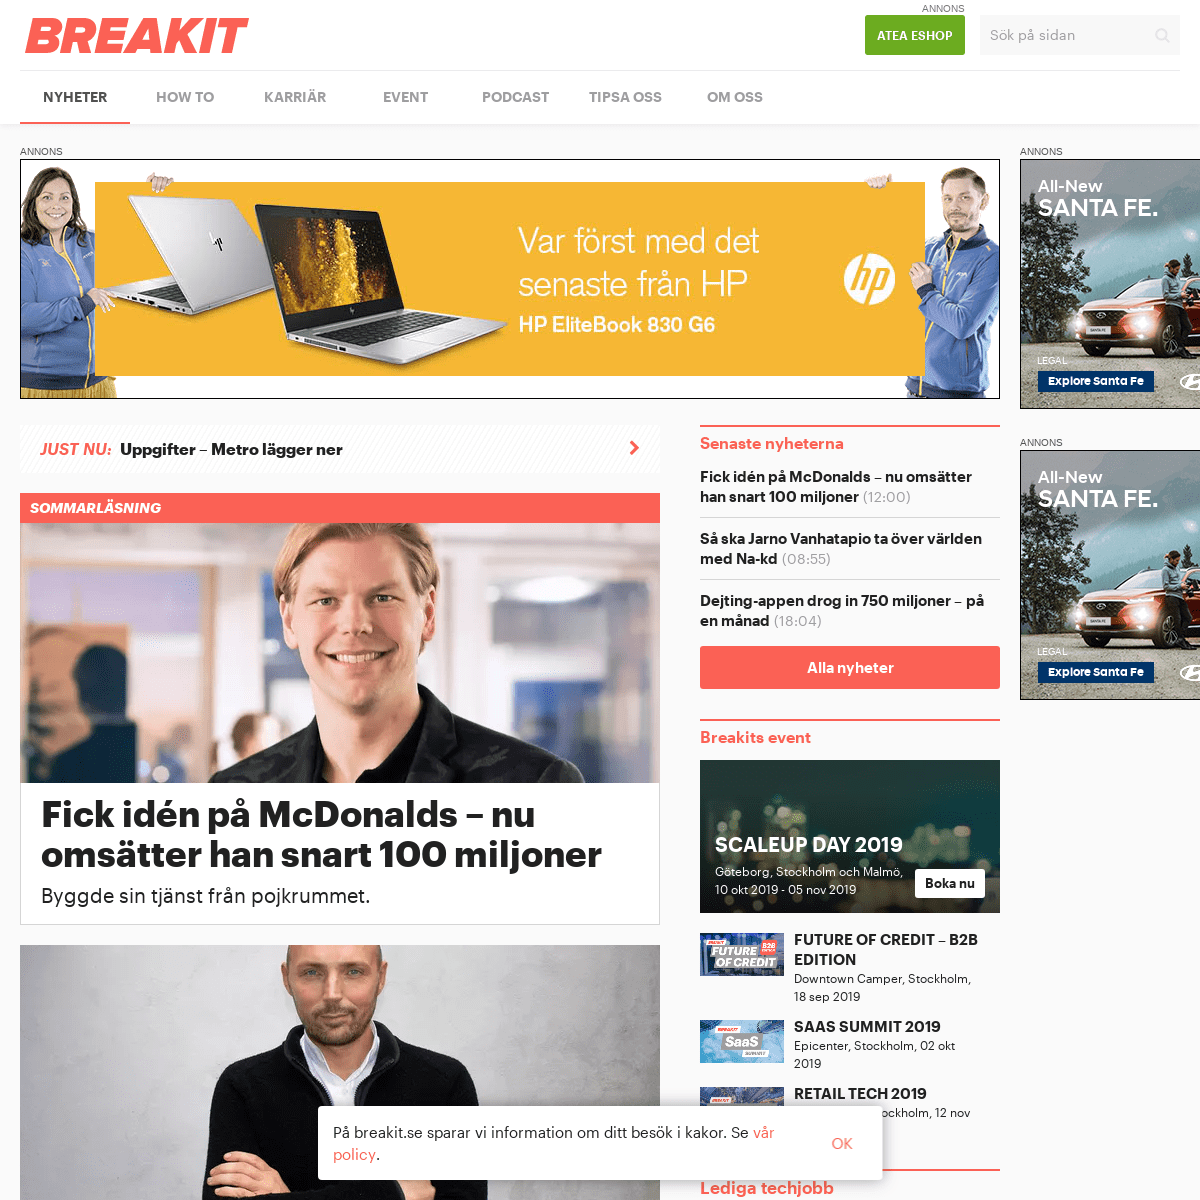 Breakit - Sveriges nyhetssajt om techbolag och startups